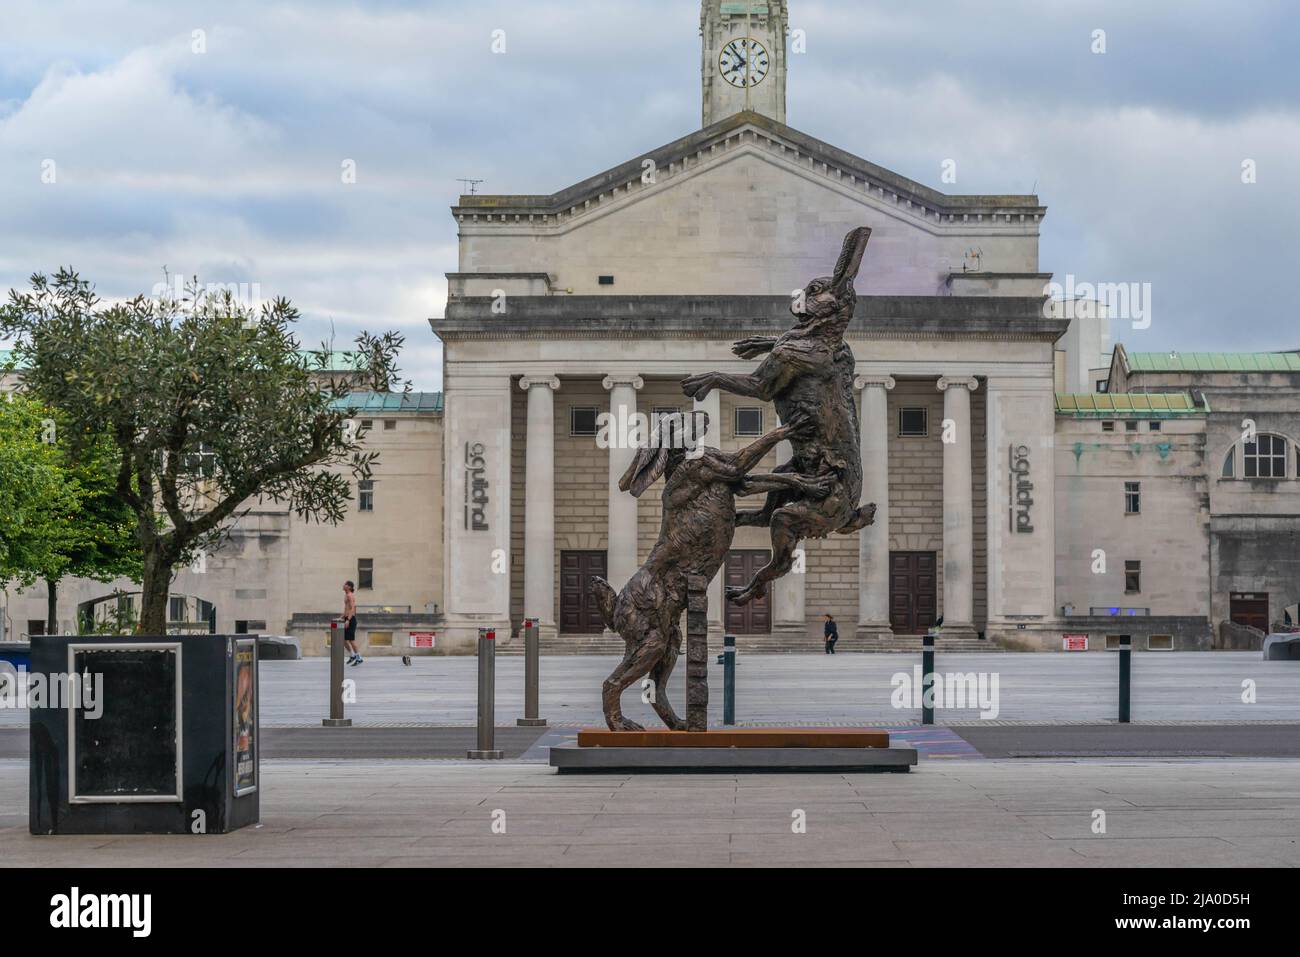 Sculpture de Hamish Mackie sur la place Guildhall 2022, Southampton, Hampshire, Angleterre, Royaume-Uni Banque D'Images